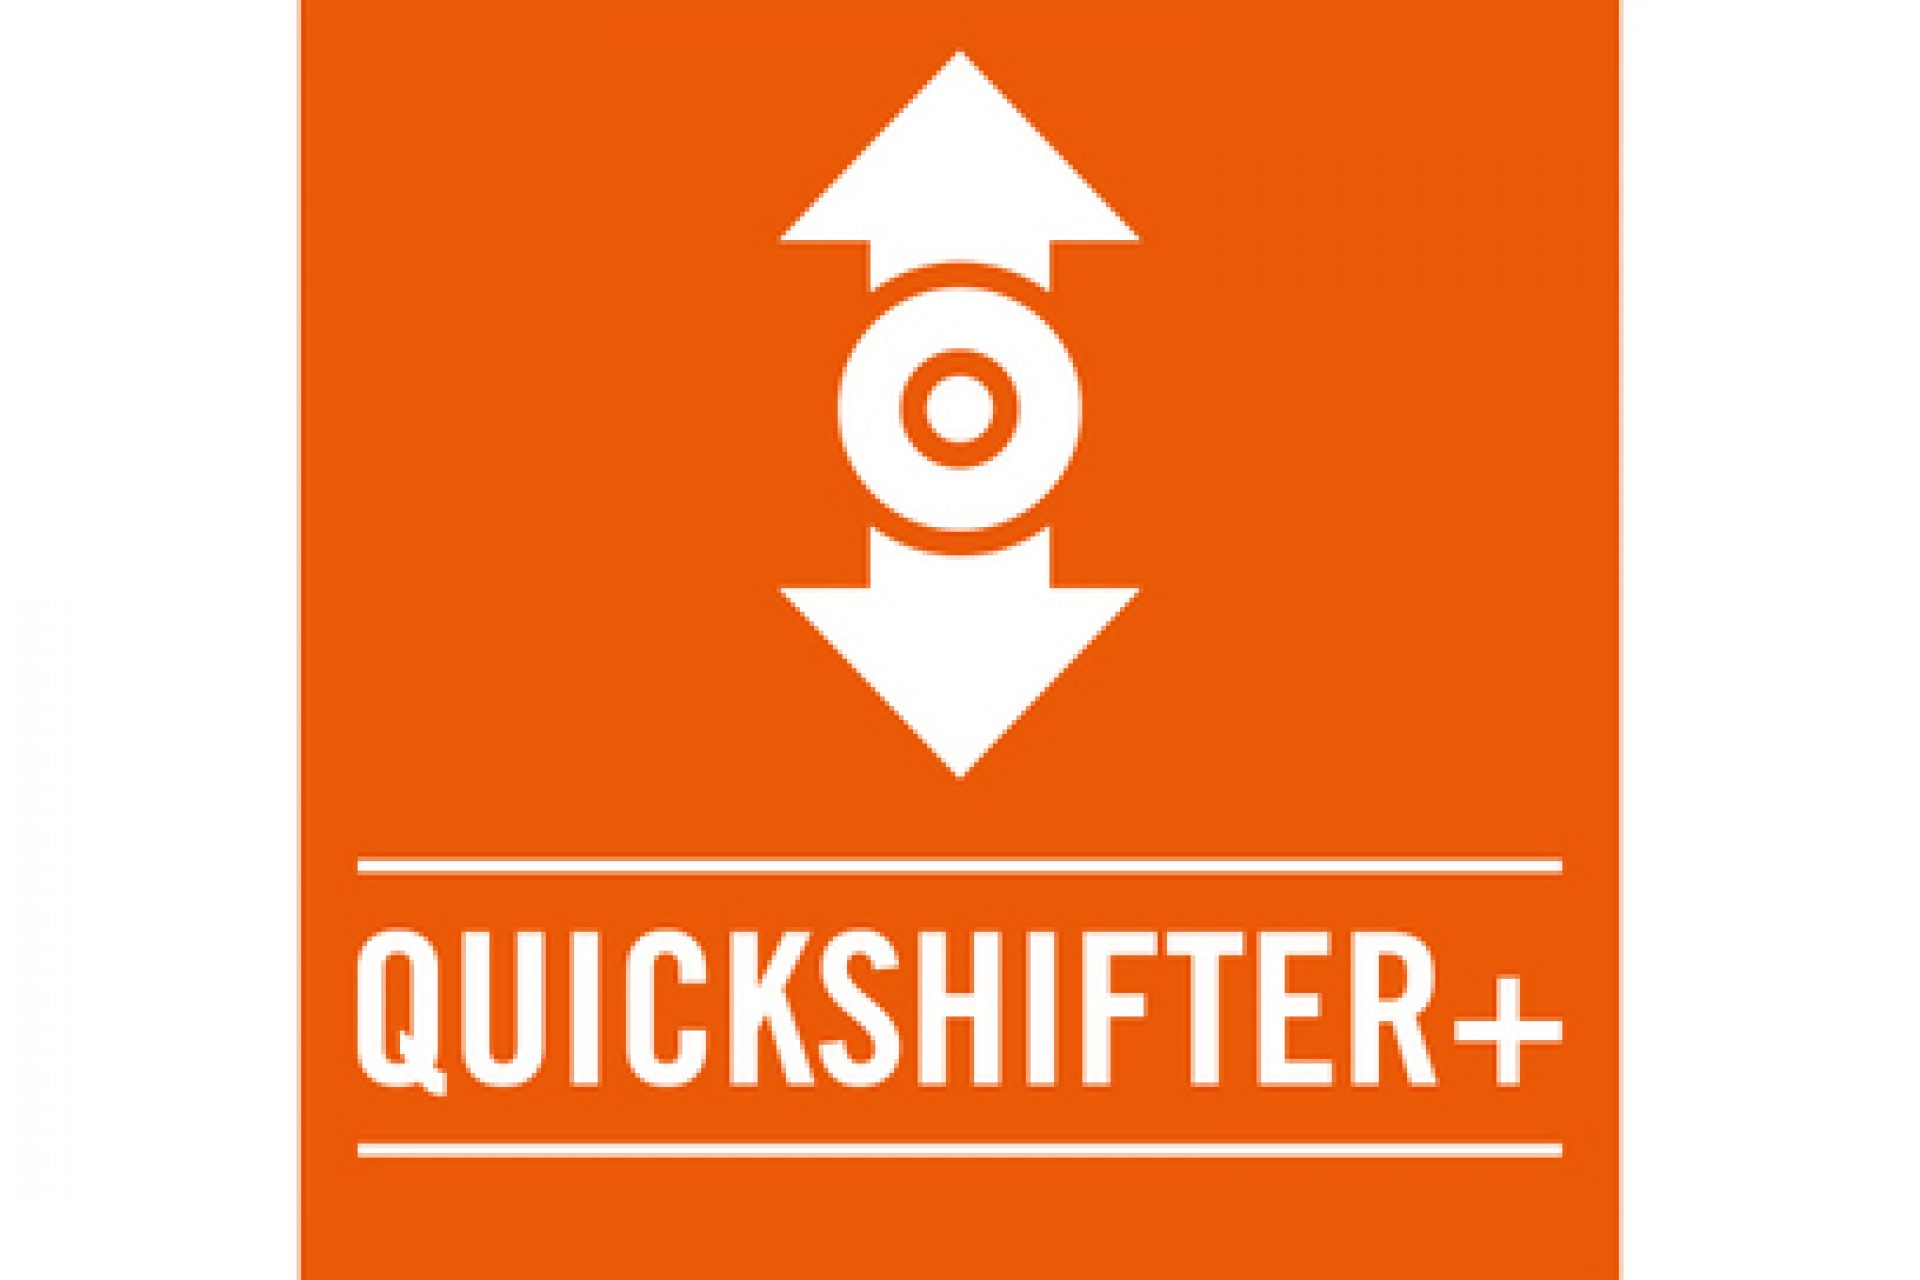 Quickshifter+ (optional)